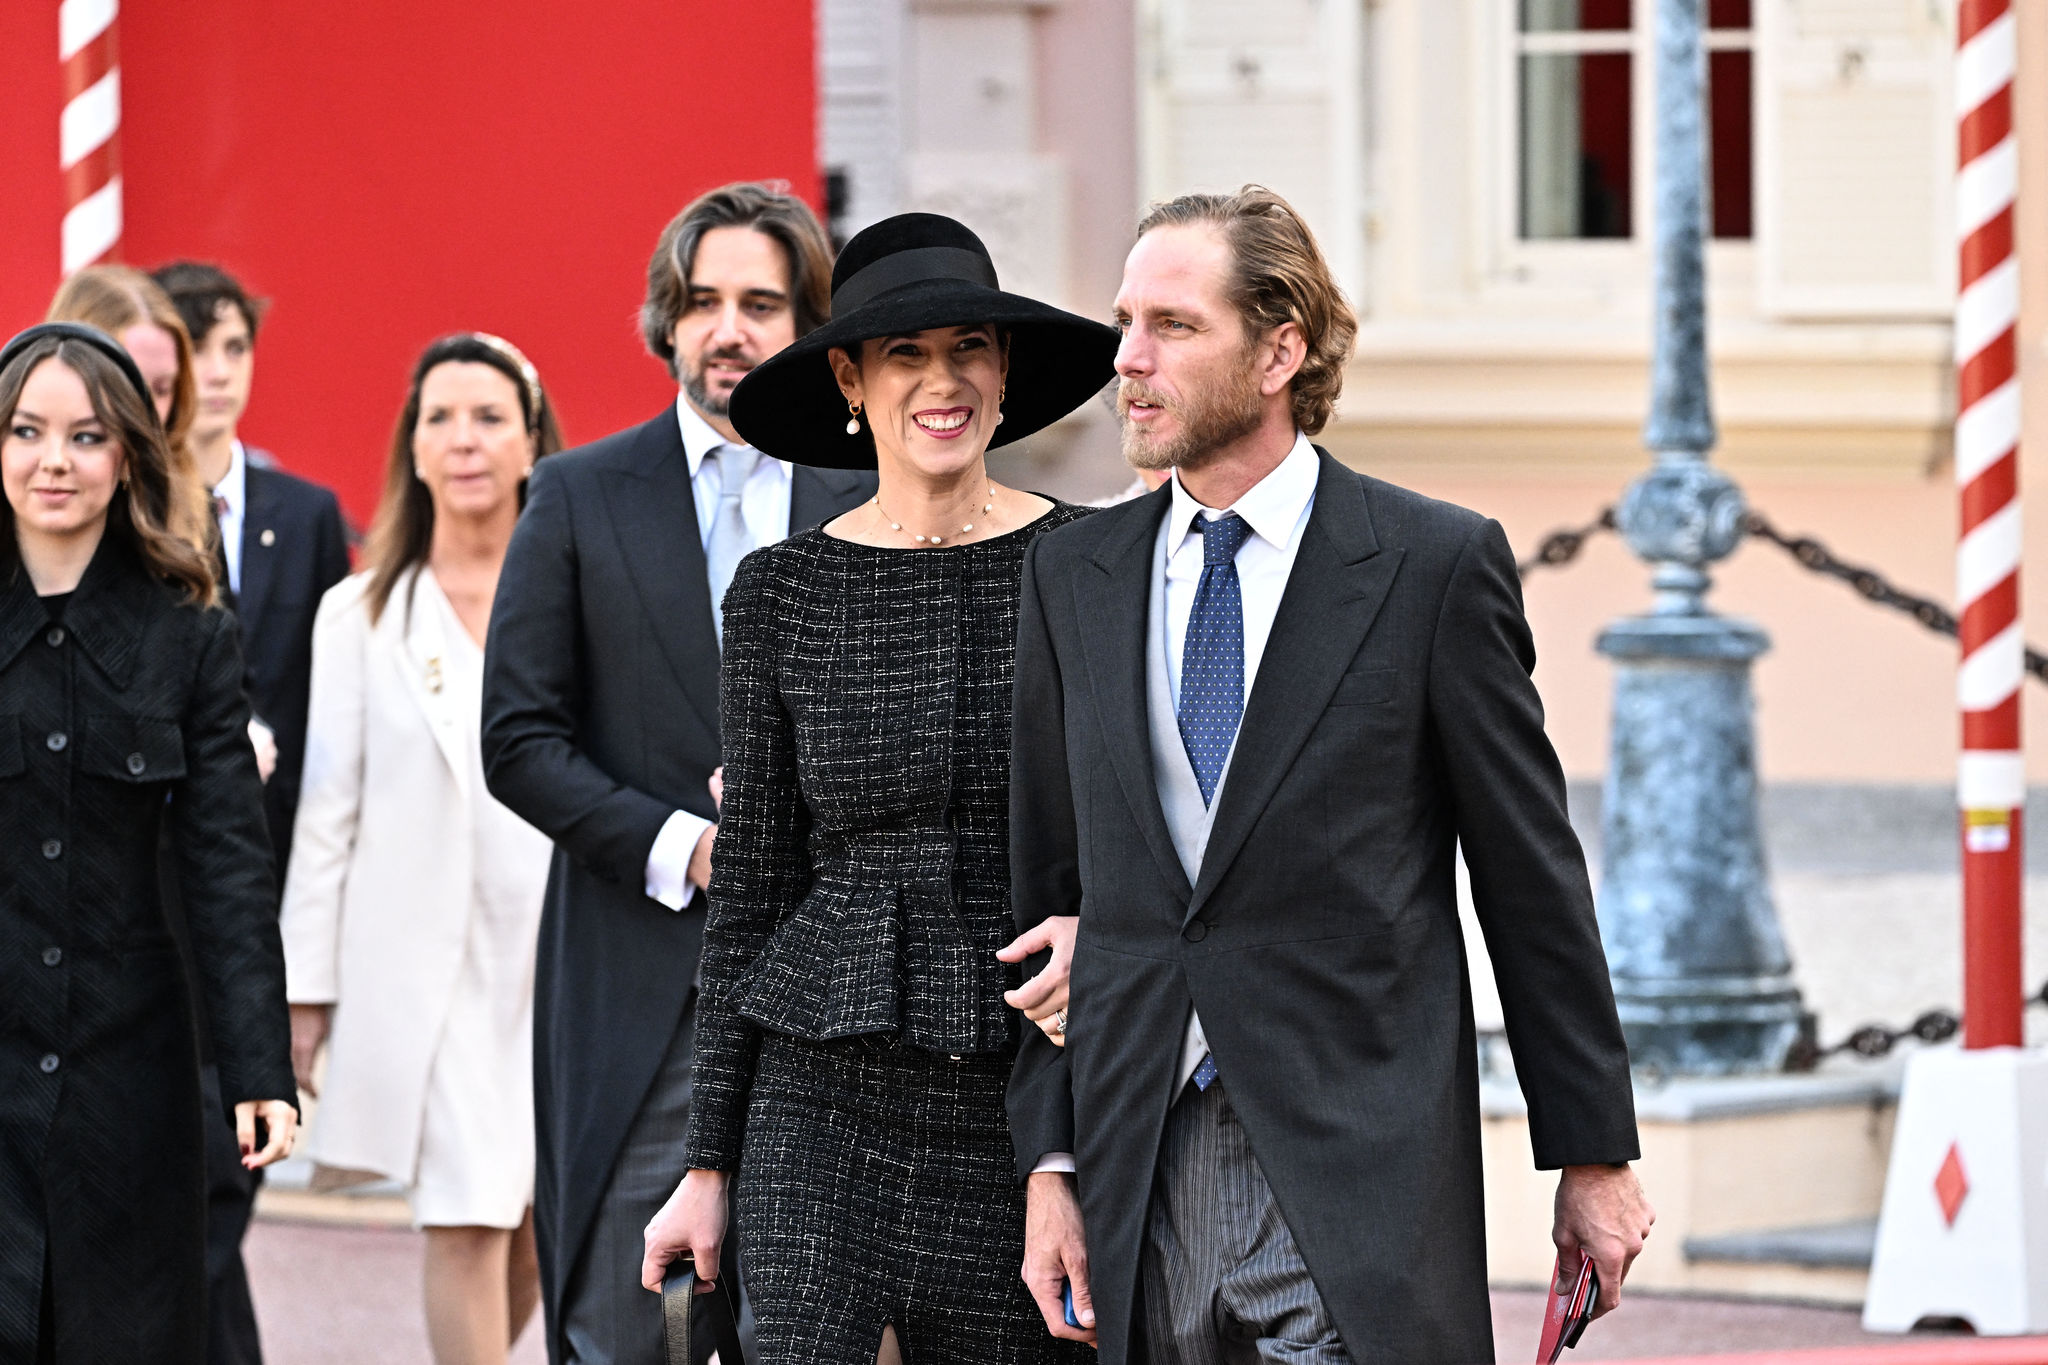 Daily News Tatiana Santodomingo junto a su marido Andrea Casiraghi el día nacional de Mónaco.